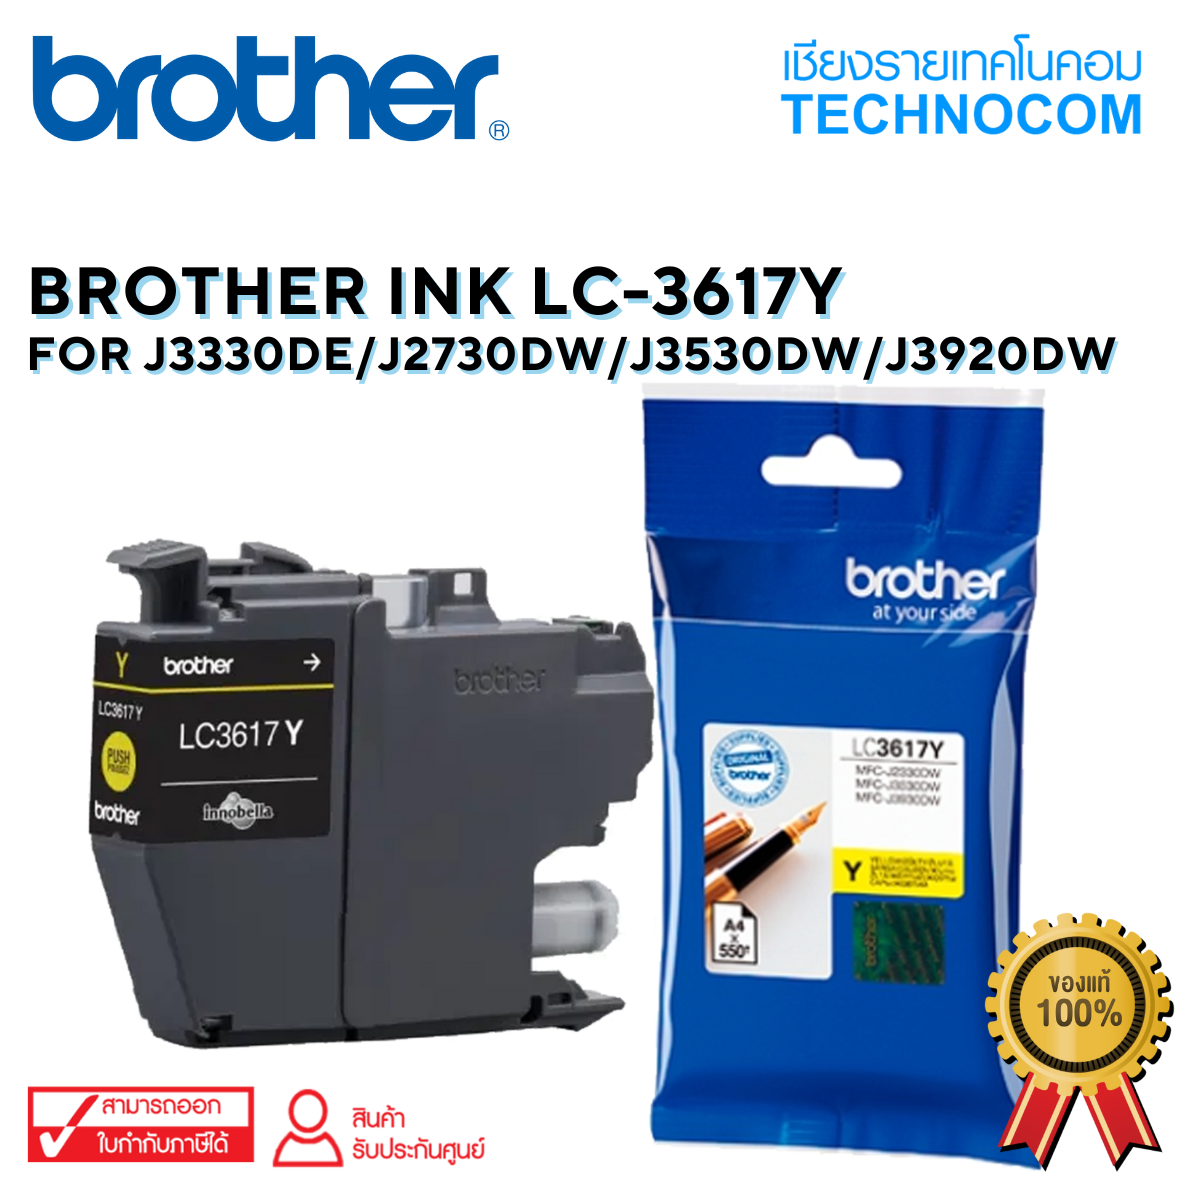 BROTHER INK LC-3617Y For J2330DW/J2730DW/J3530DW/J3920DW(copy)(copy)(copy)